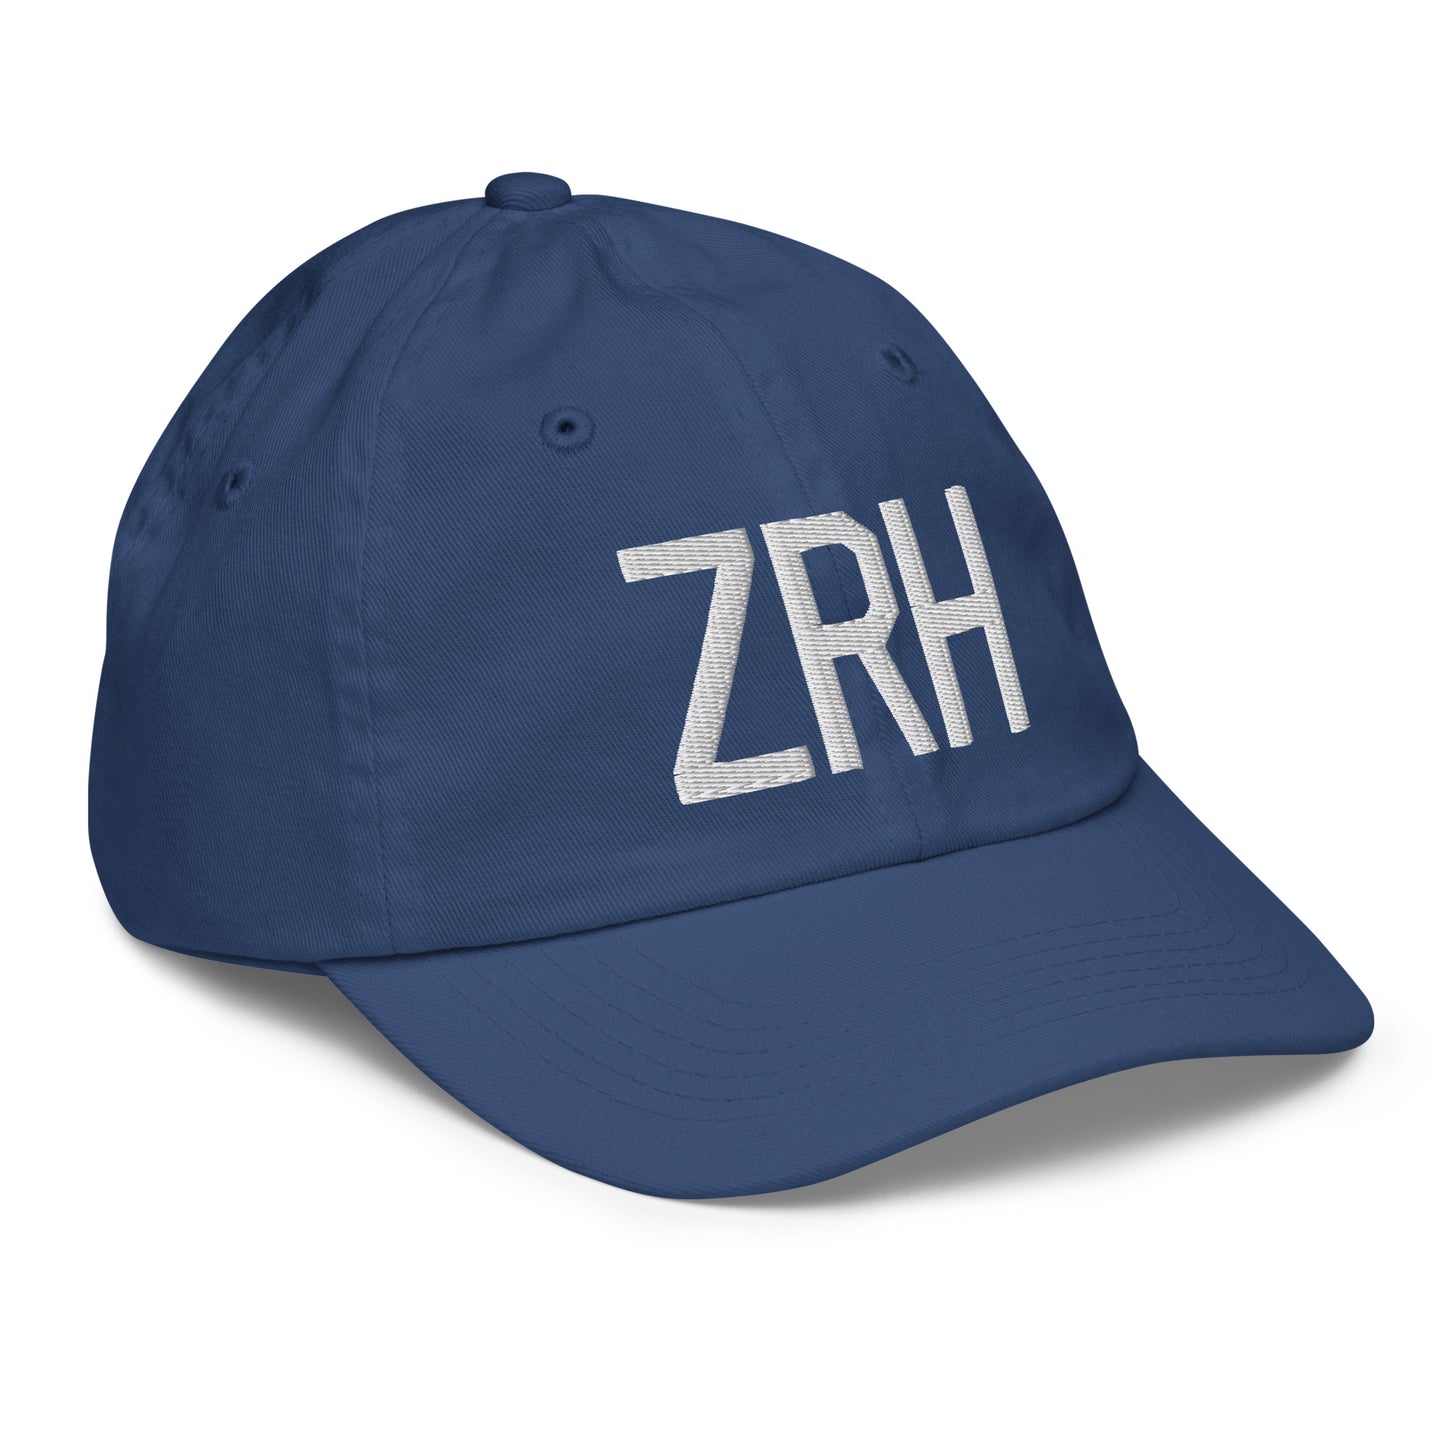 Airport Code Kid's Baseball Cap - White • ZRH Zurich • YHM Designs - Image 21